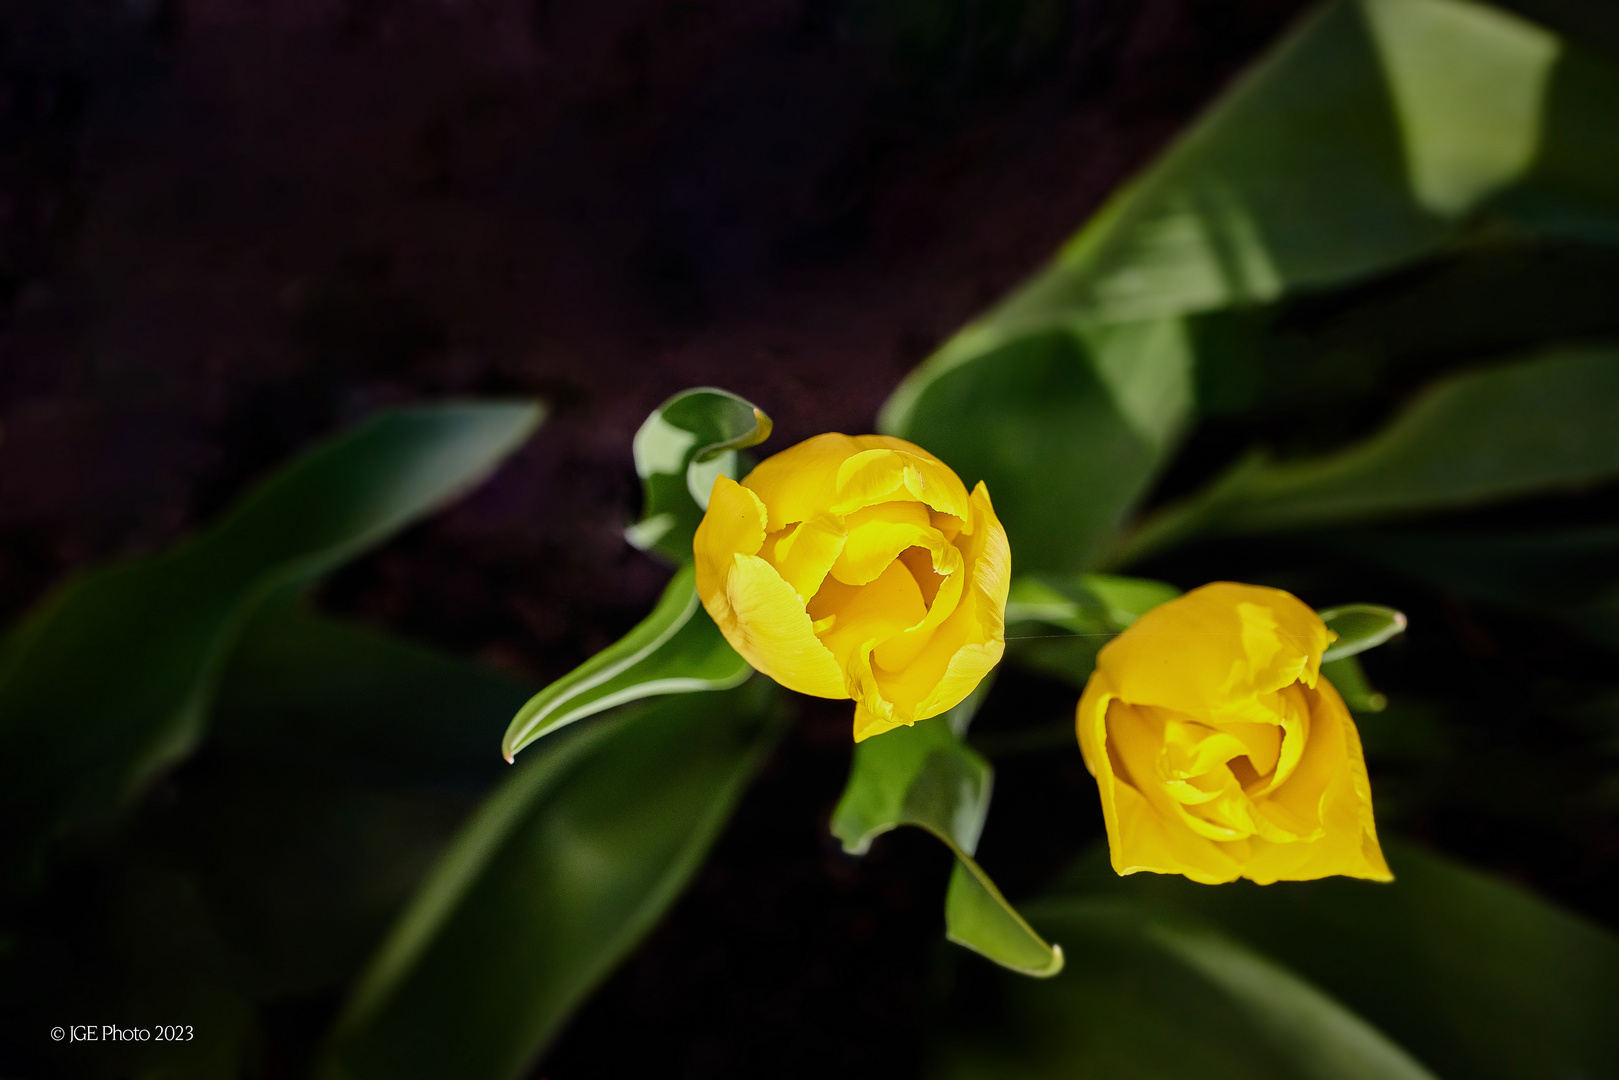 Gelbe Tulpen im Garten